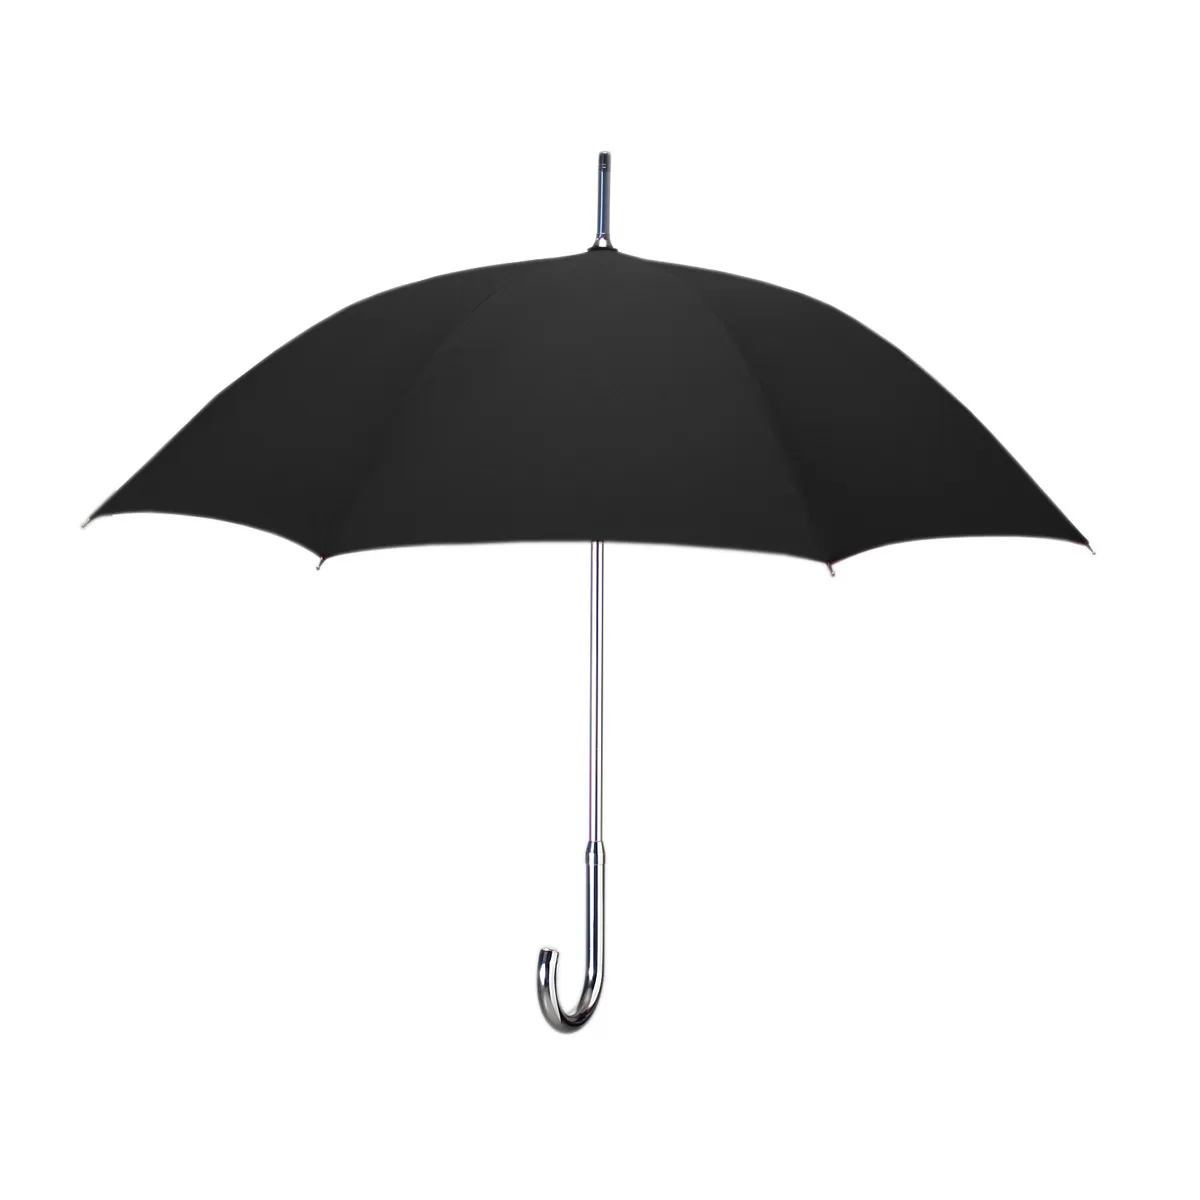 Aluminum Frame Umbrella - Black